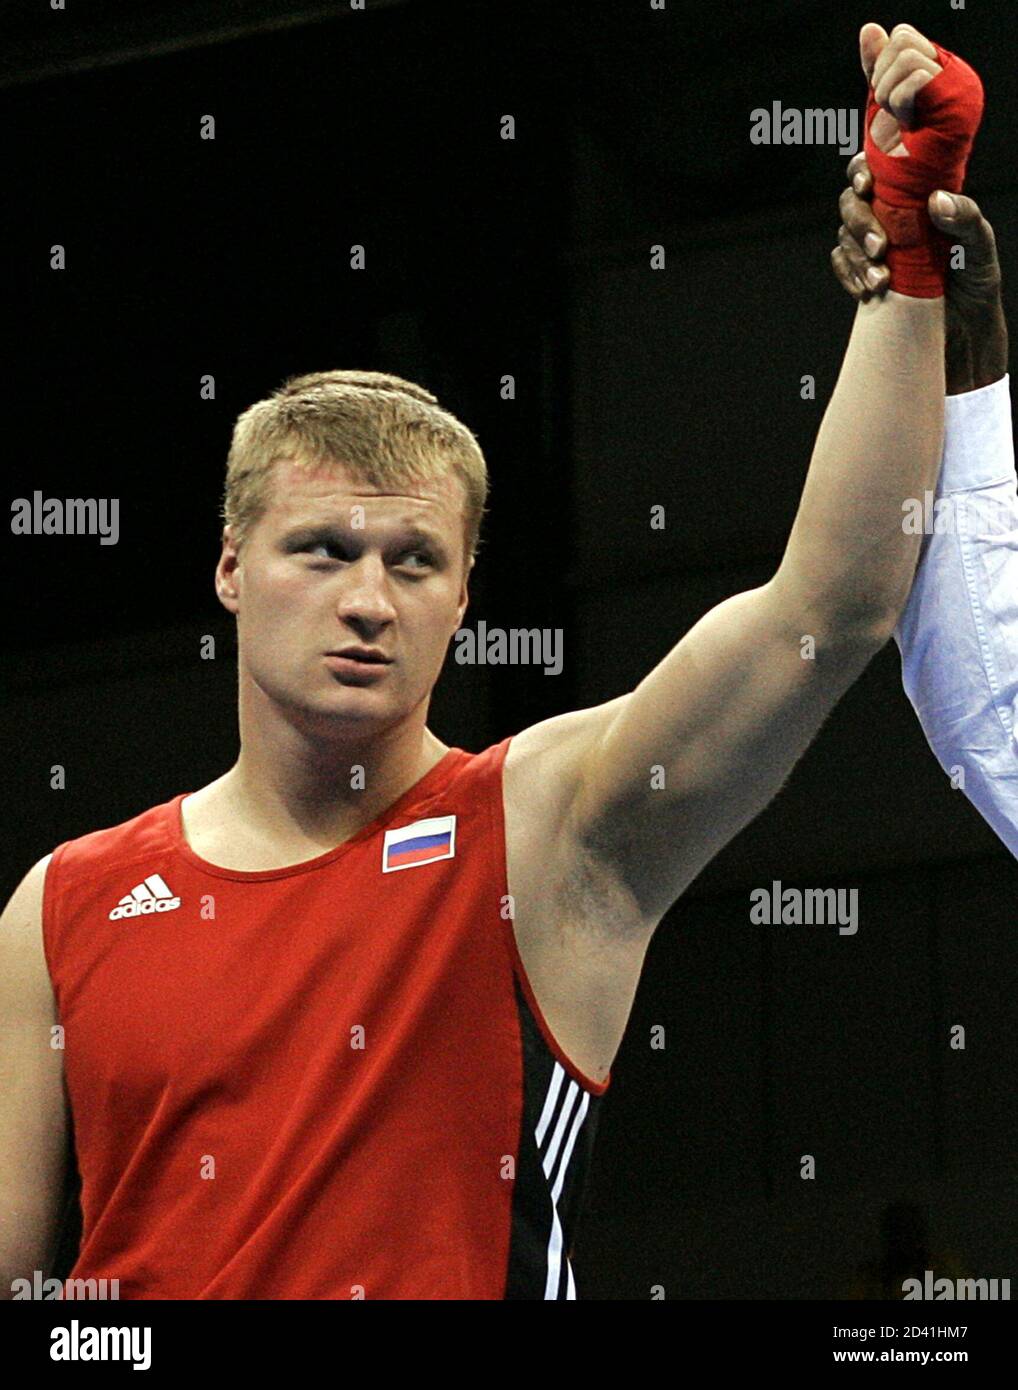 Russlands Alexander Povetkin feiert Sieg in der Männer Boxen Superschwergewicht (kg) bei den Athen 2004 Olympischen Sommerspiele, 29. August 2004. Povetkin gewann seine Goldmedaille mit einem Freilos. Stockfoto